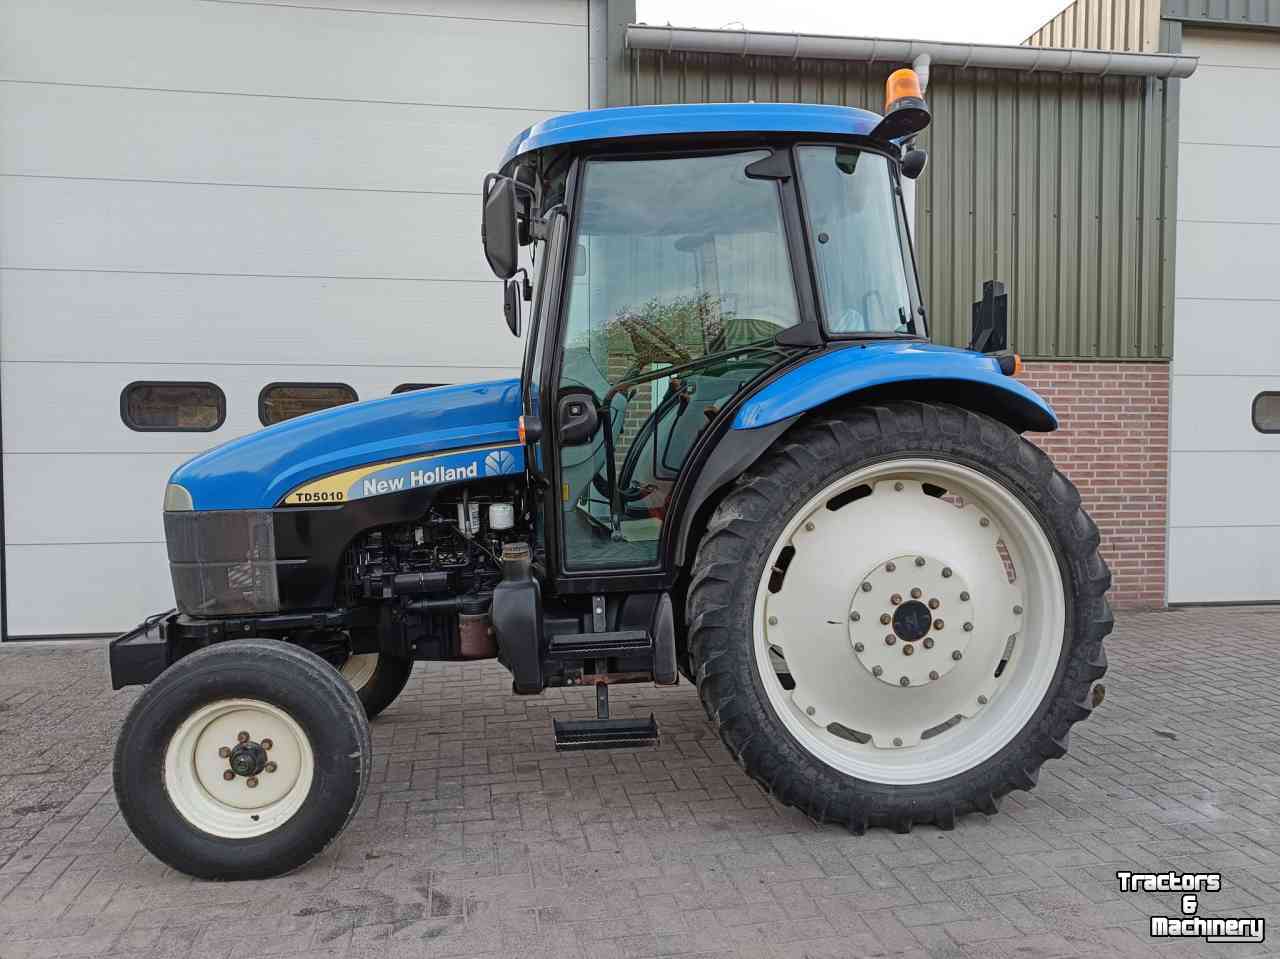 Tractors New Holland TD5010